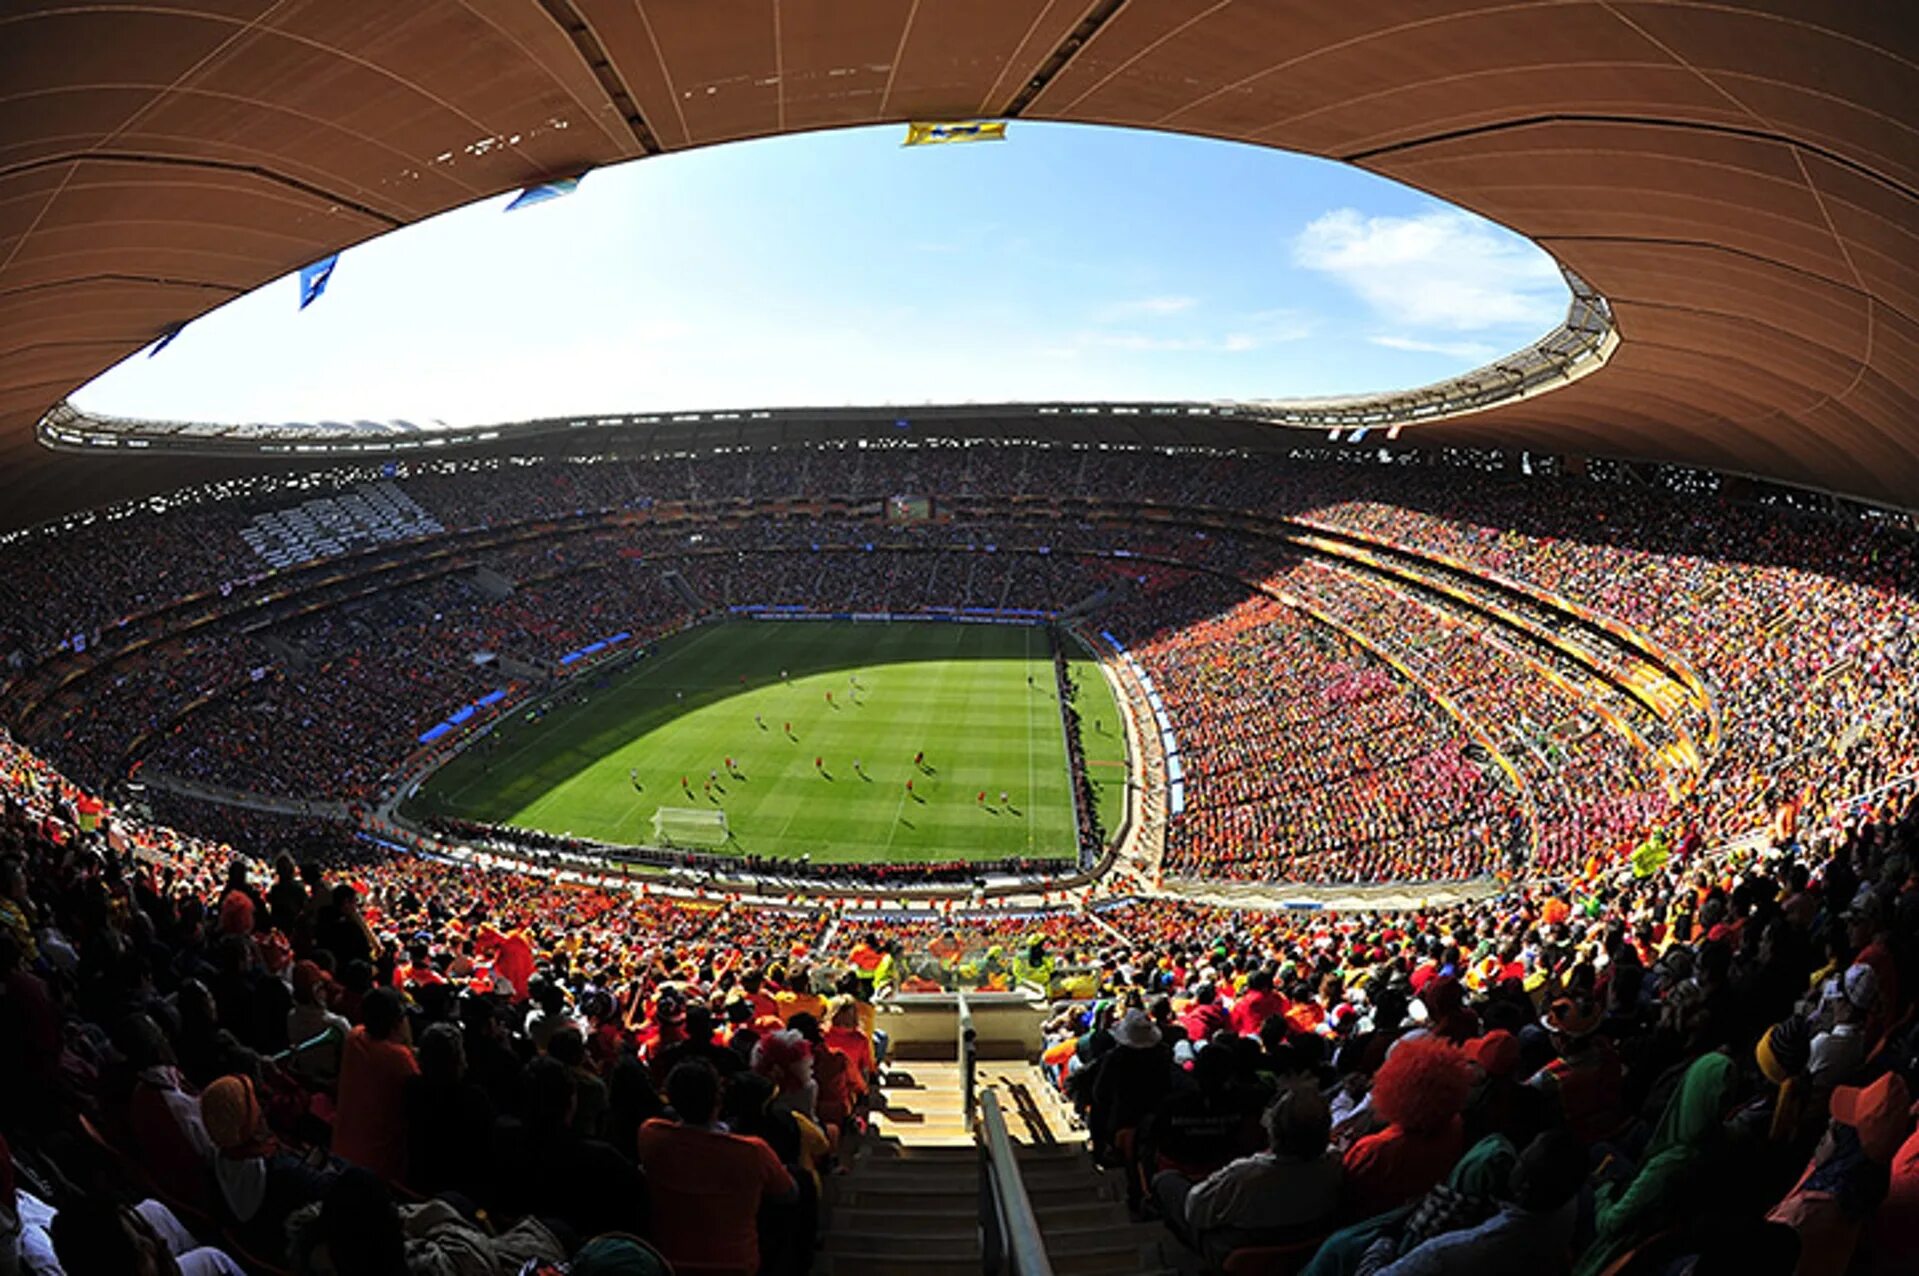 Стадион СОККЕР Сити Йоханнесбург. ФНБ Стэдиум Йоханнесбург. СОККЕР Сити стадион ЮАР. Стадион Роуз Боул в США. Сколько зрителей вмещает стадион